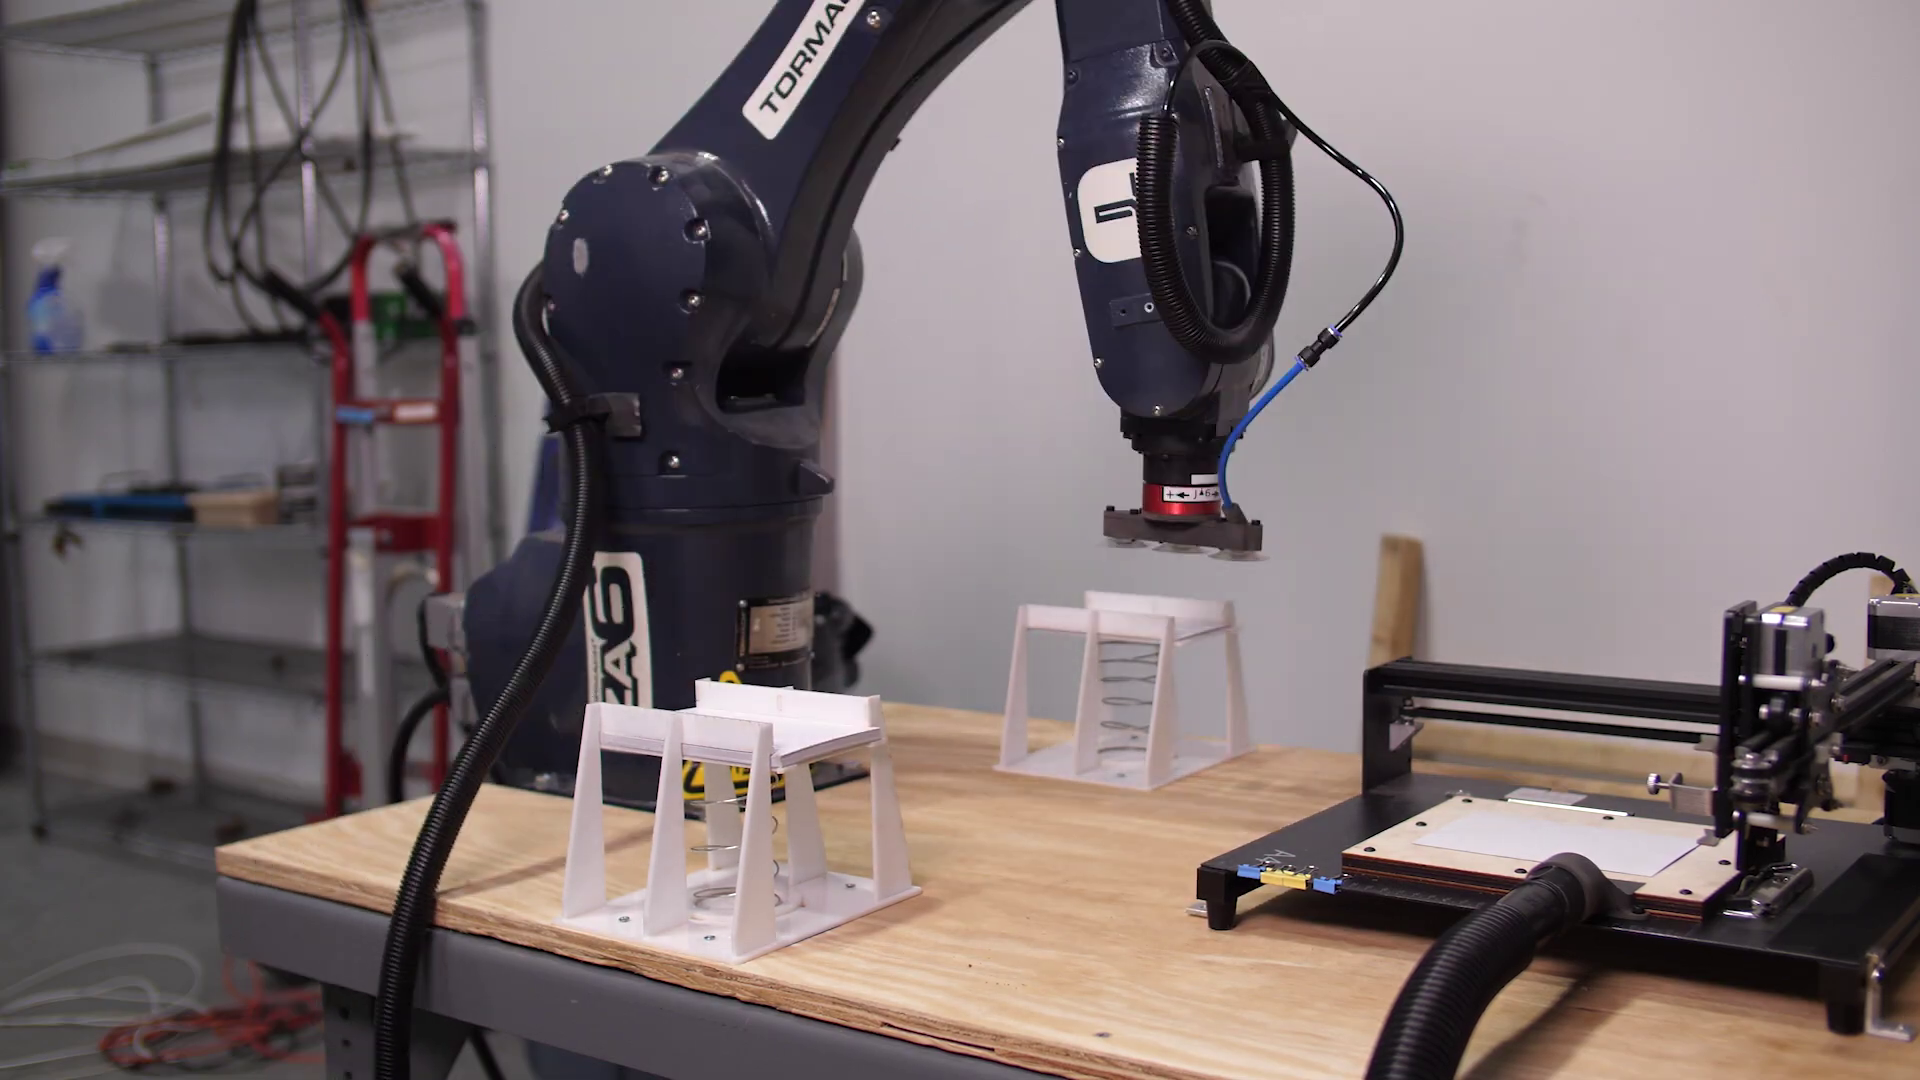 Zautomatyzuj odręczne pocztówki za pomocą robotów